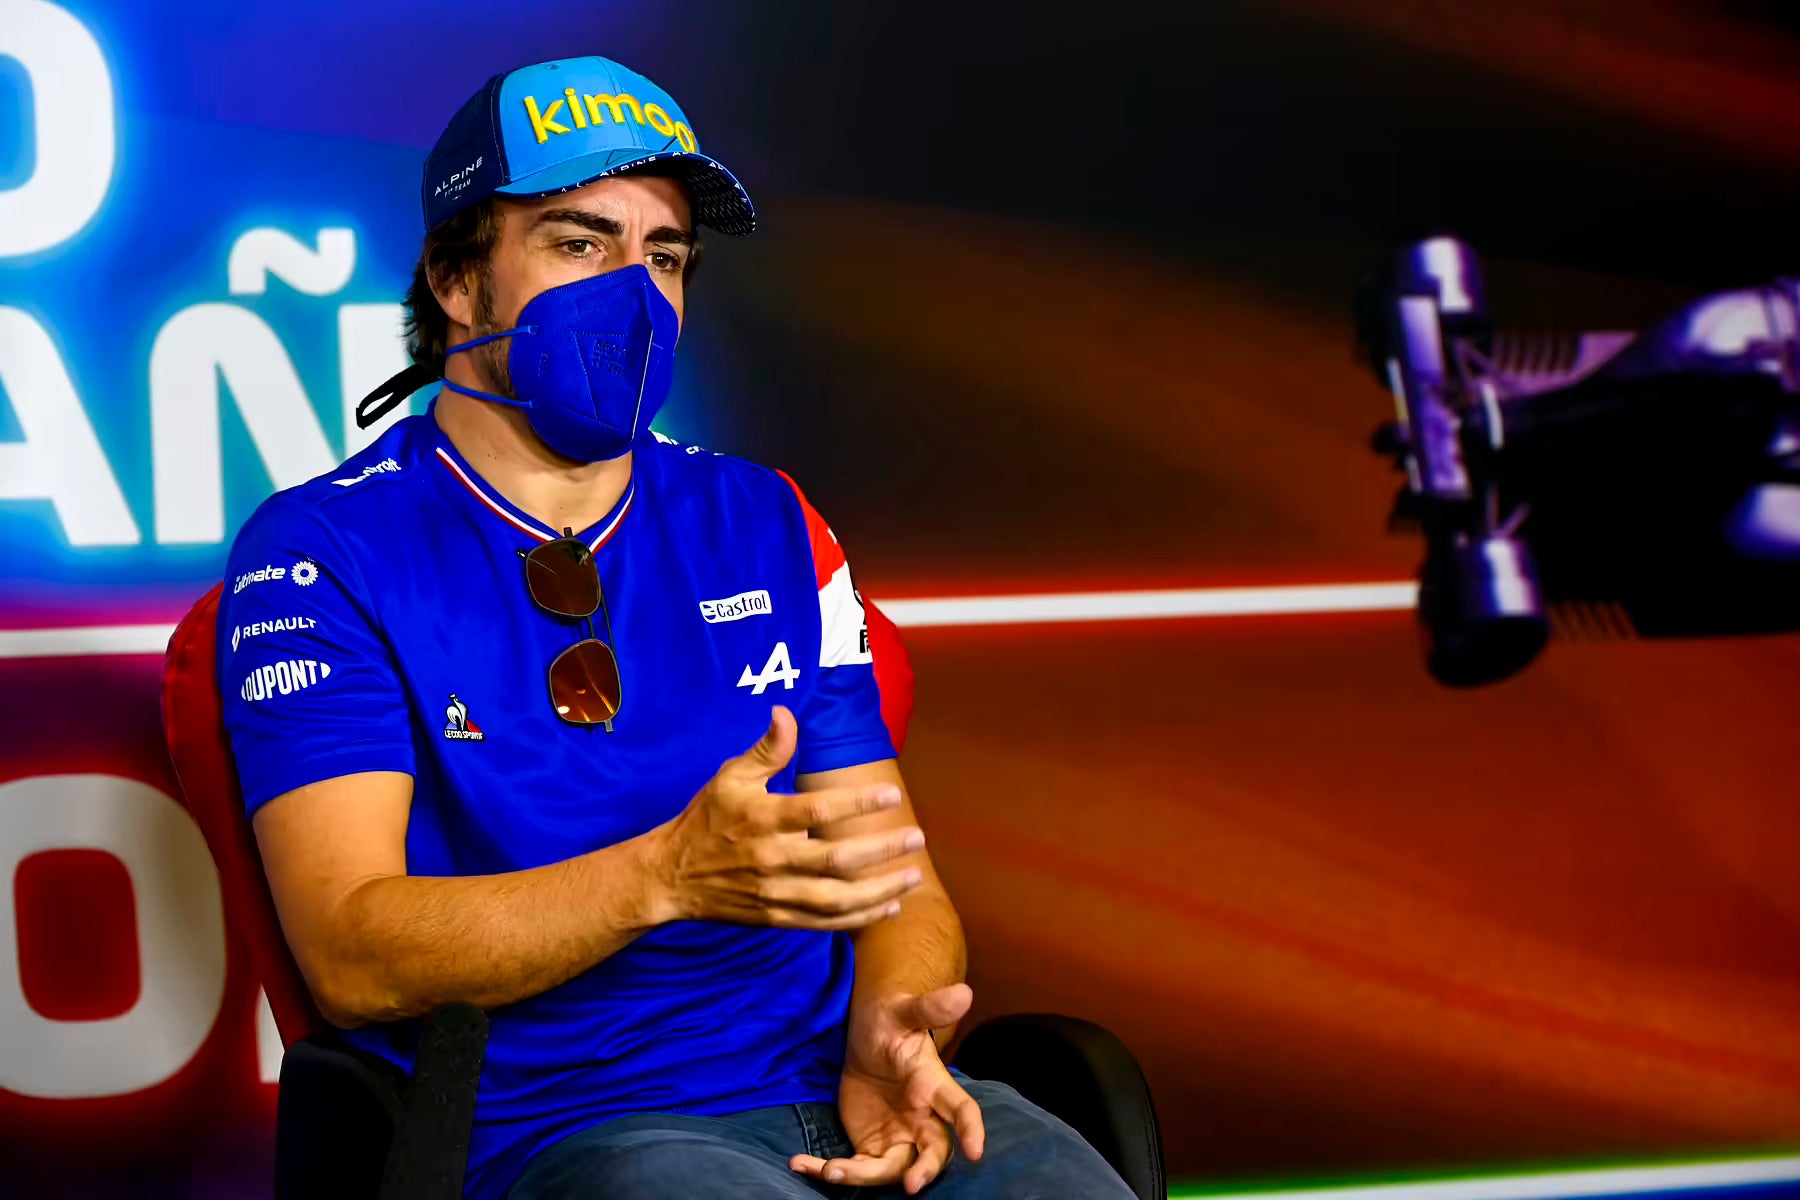 Fernando Alonso in Alpine uniform at Spanish Grand Prix 2021 press conference